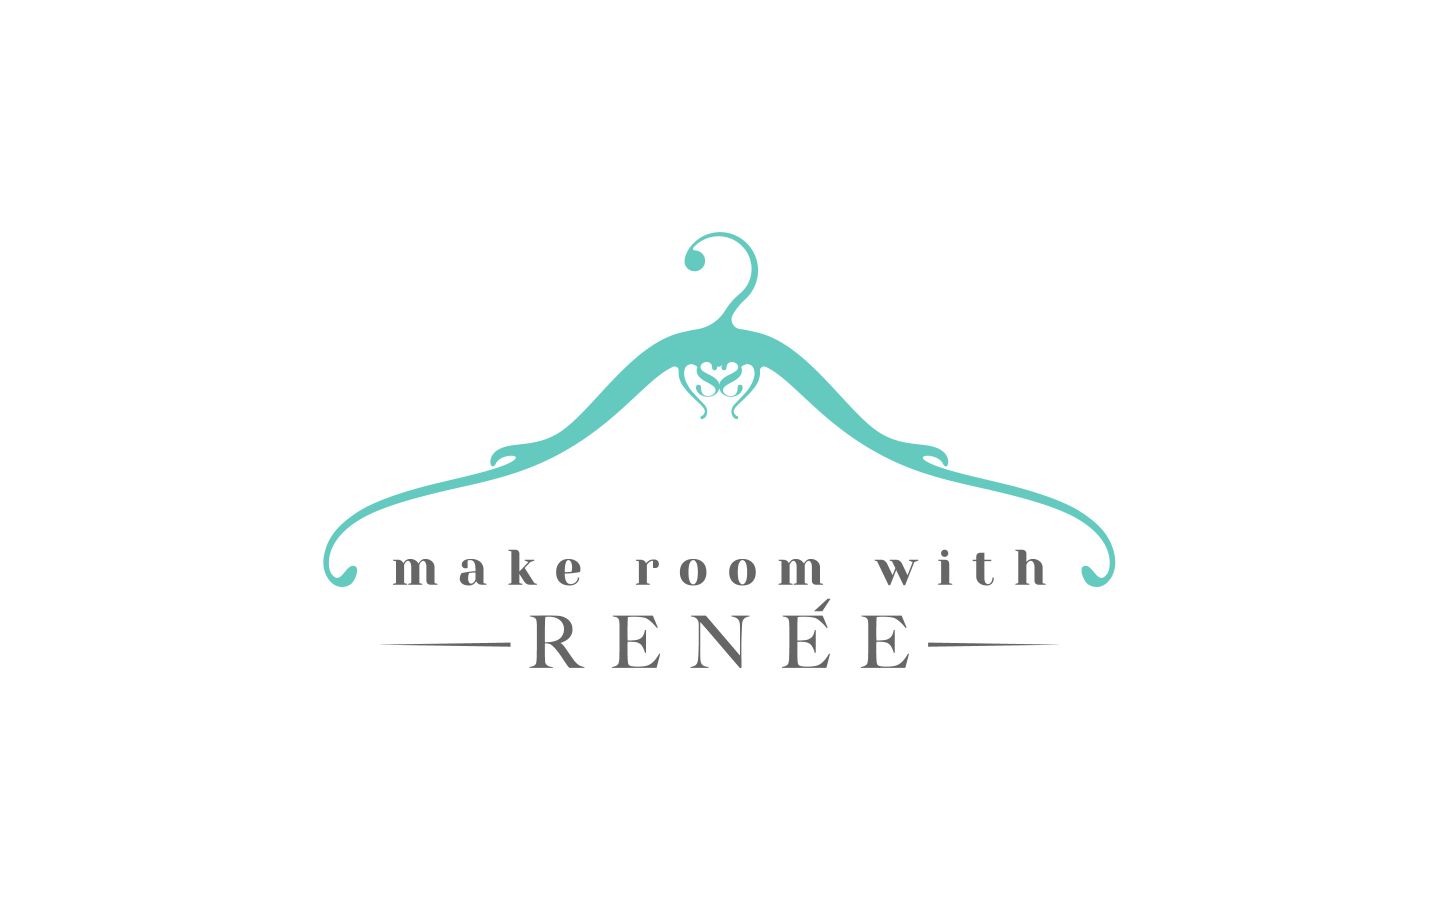 Visit Make Room With Renee